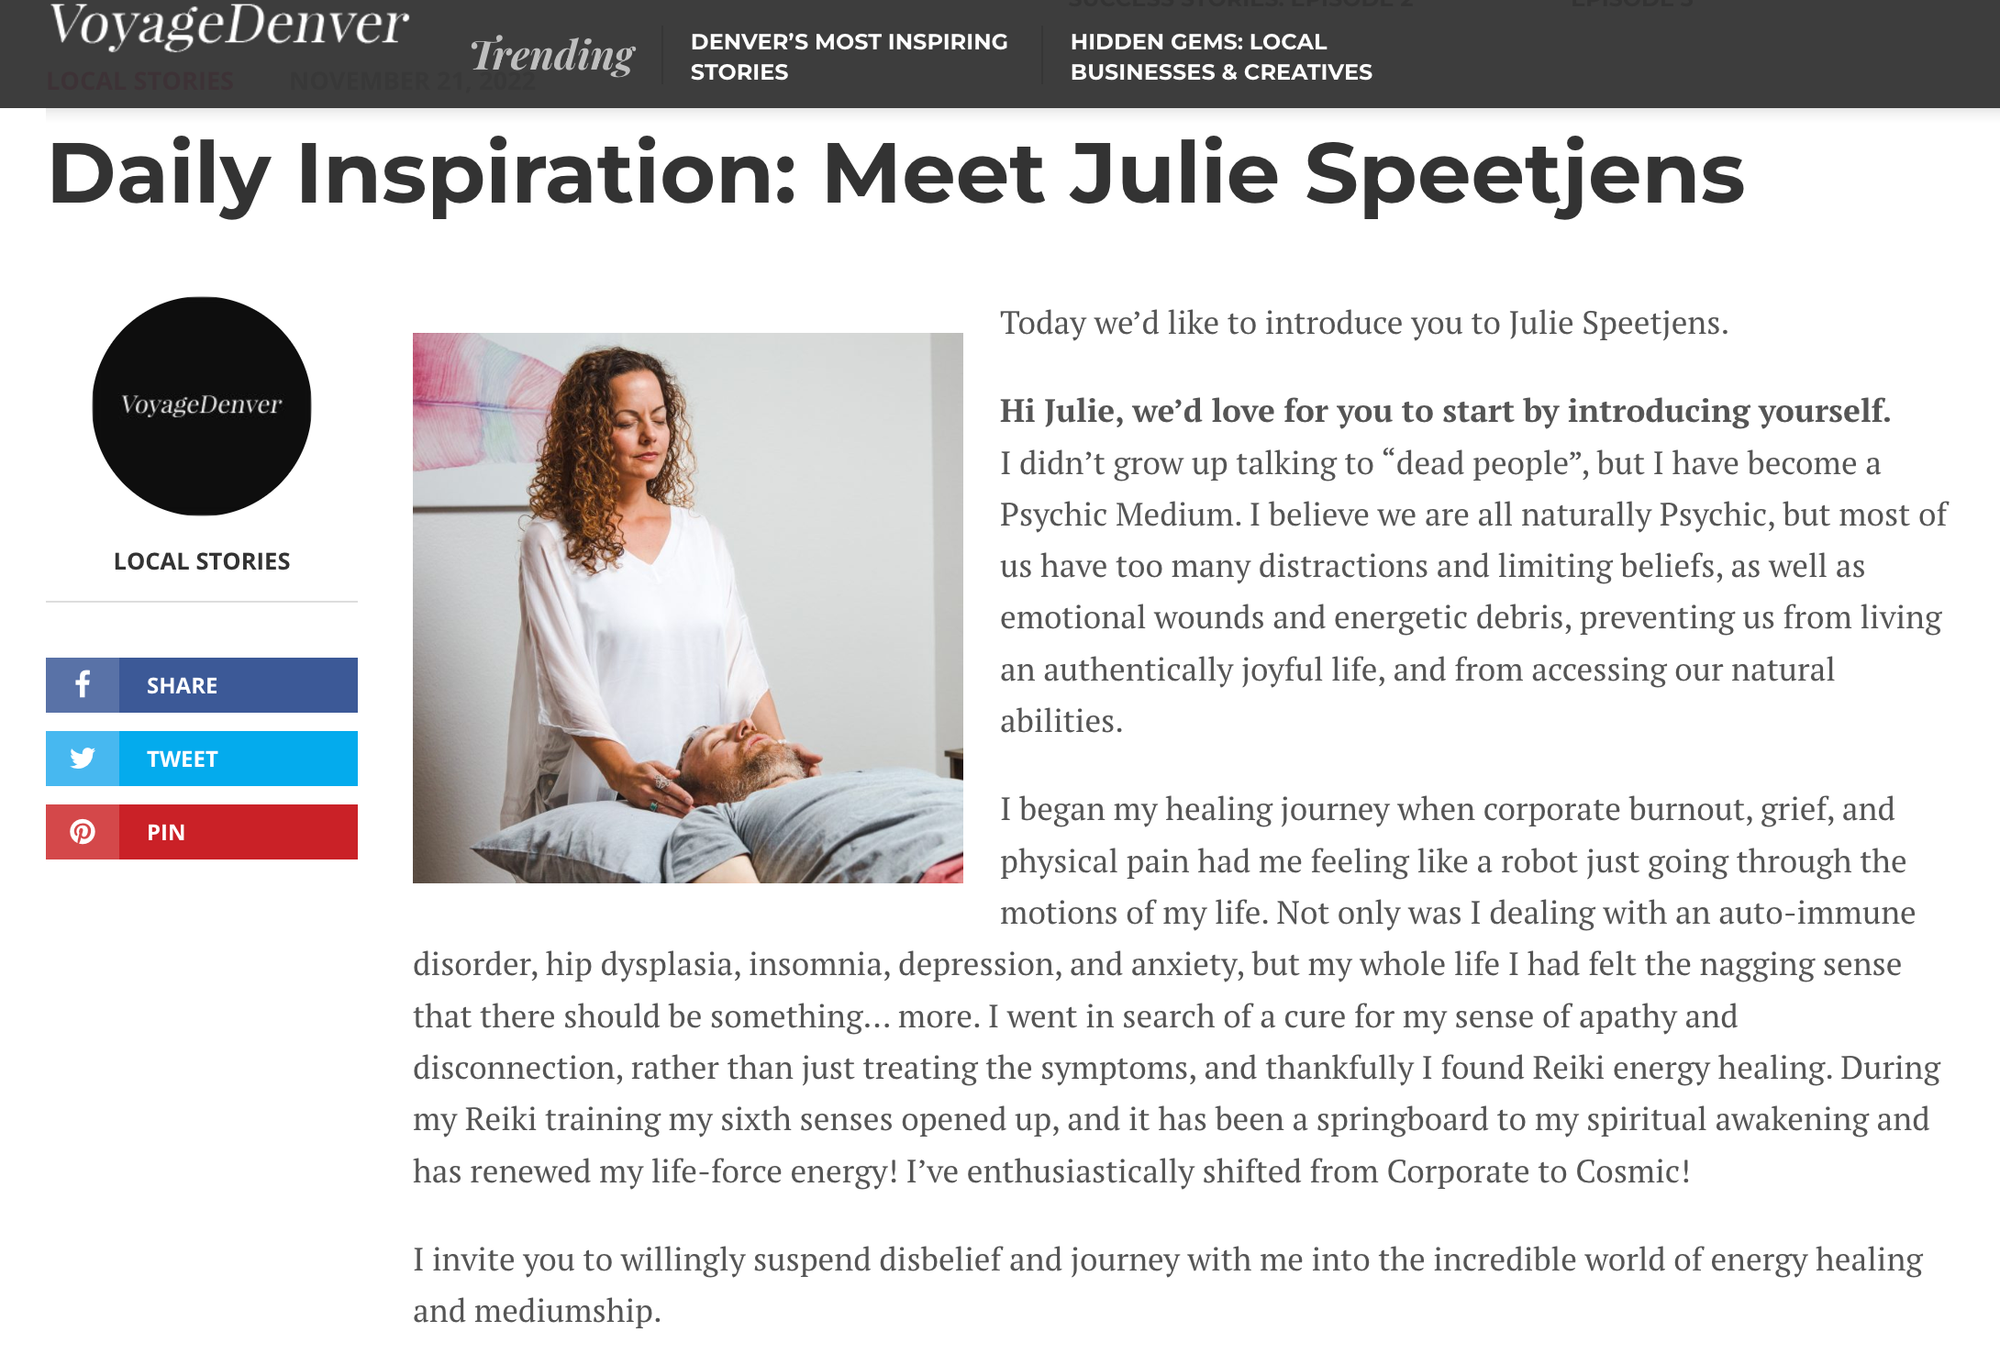 Daily Inspiration: Meet Julie Speetjens